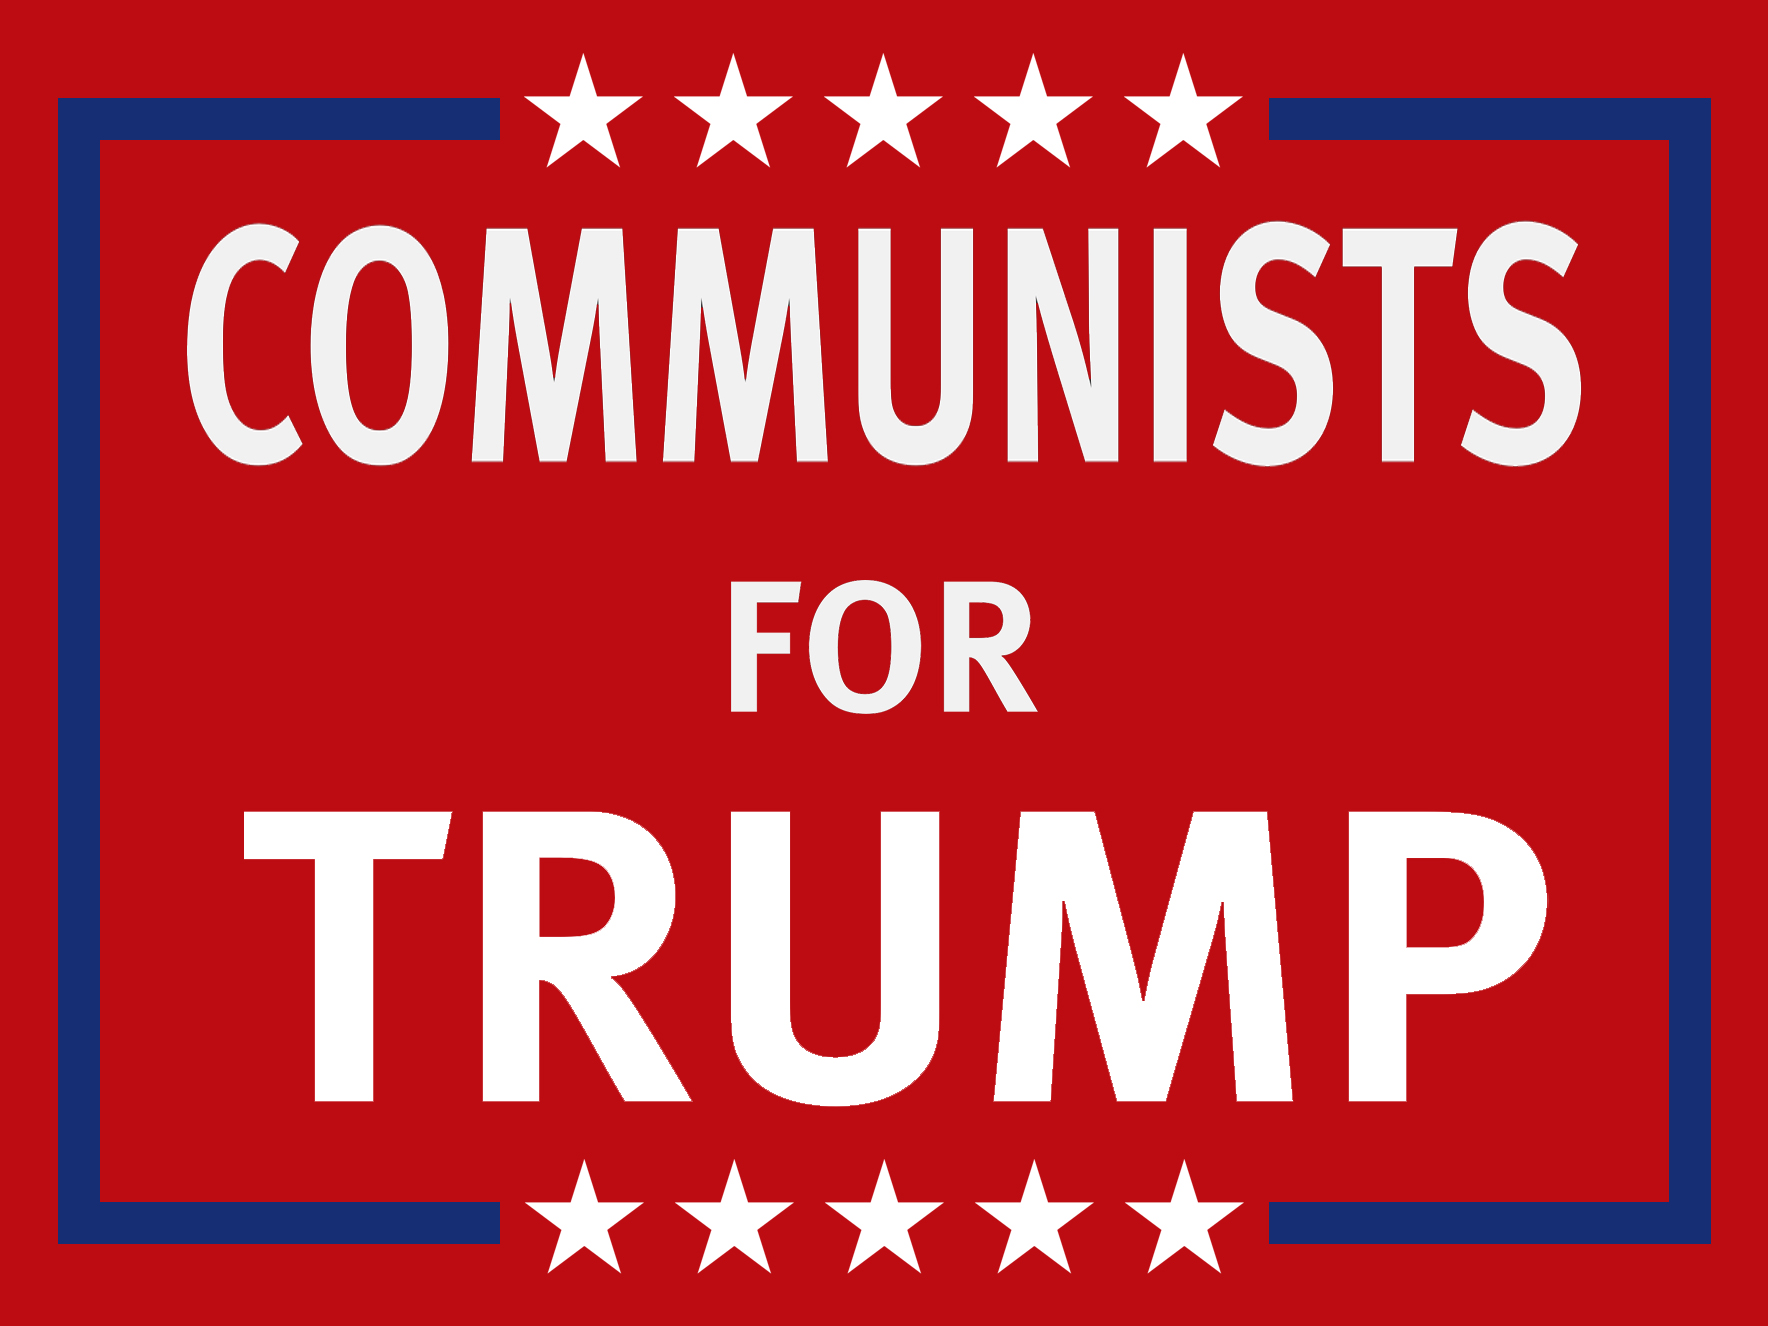 File:Communists for trump image.jpg